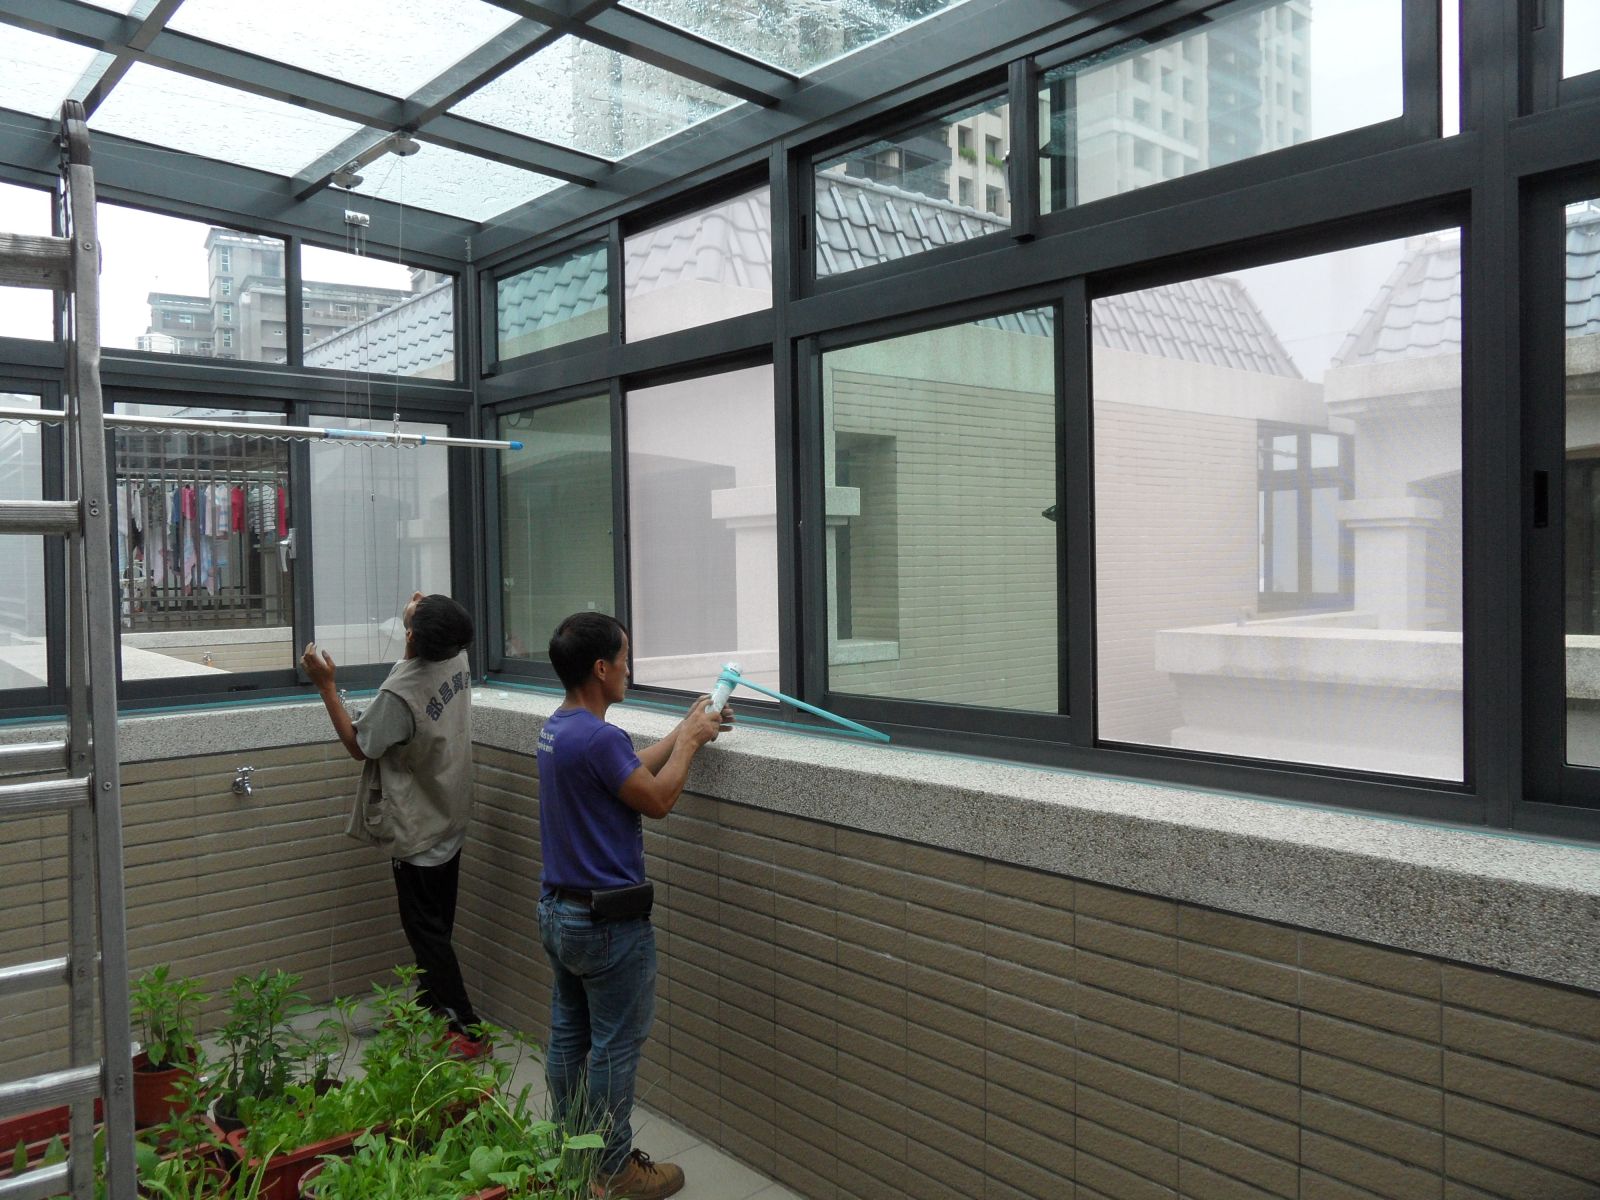 屋頂全採用5+5綠色膠合玻璃.左側及正面採用高級氣密窗5mm綠色強化玻璃.